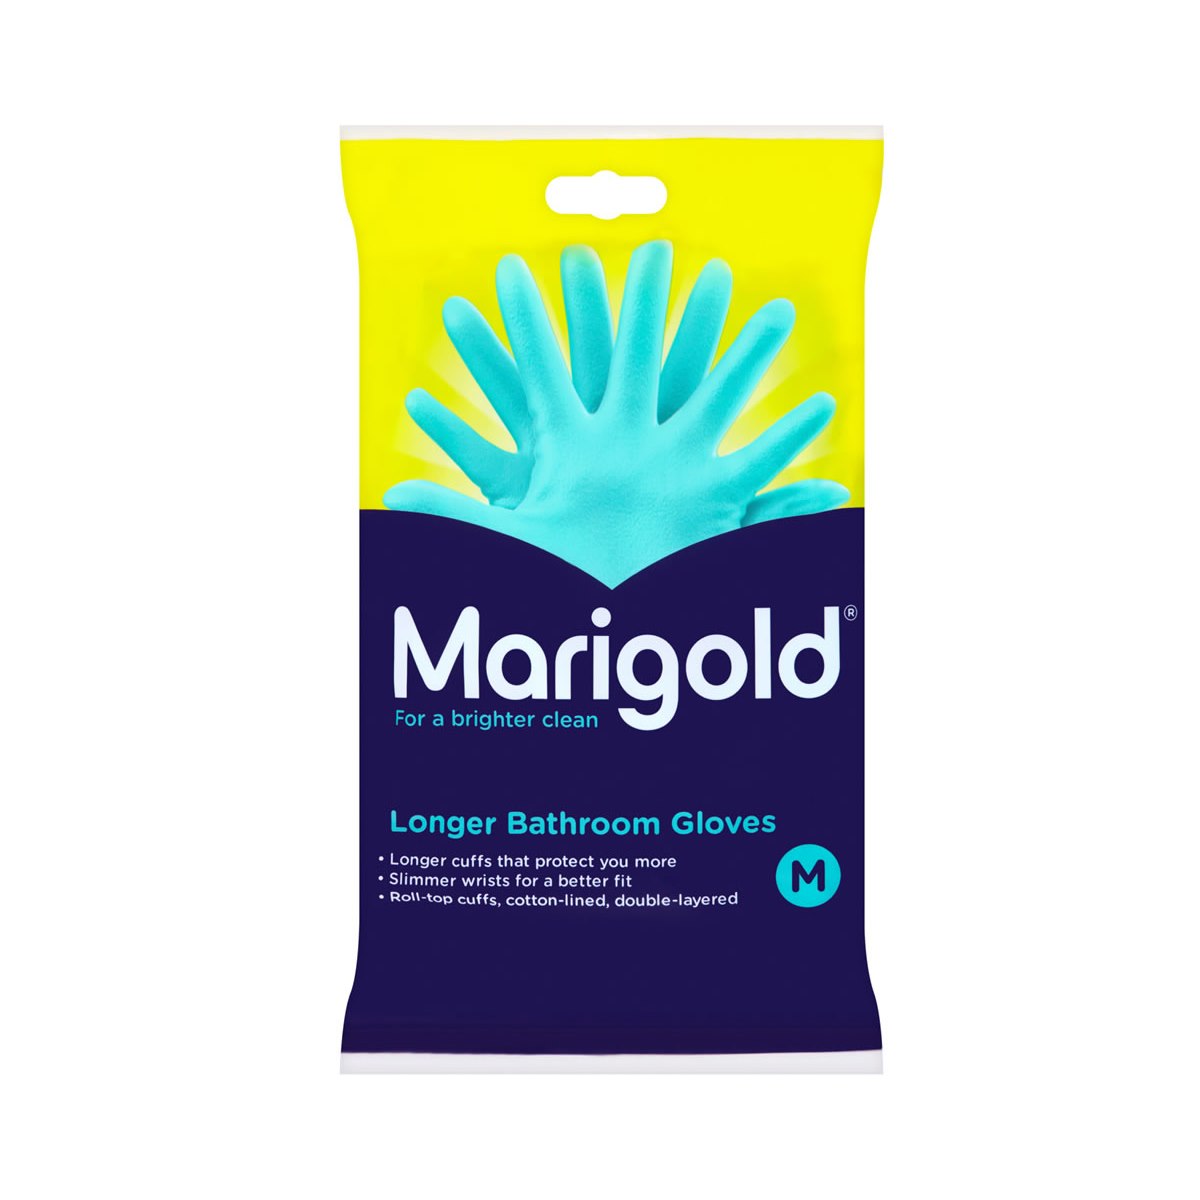 Marigold Longer Bathroom Gloves - Medium